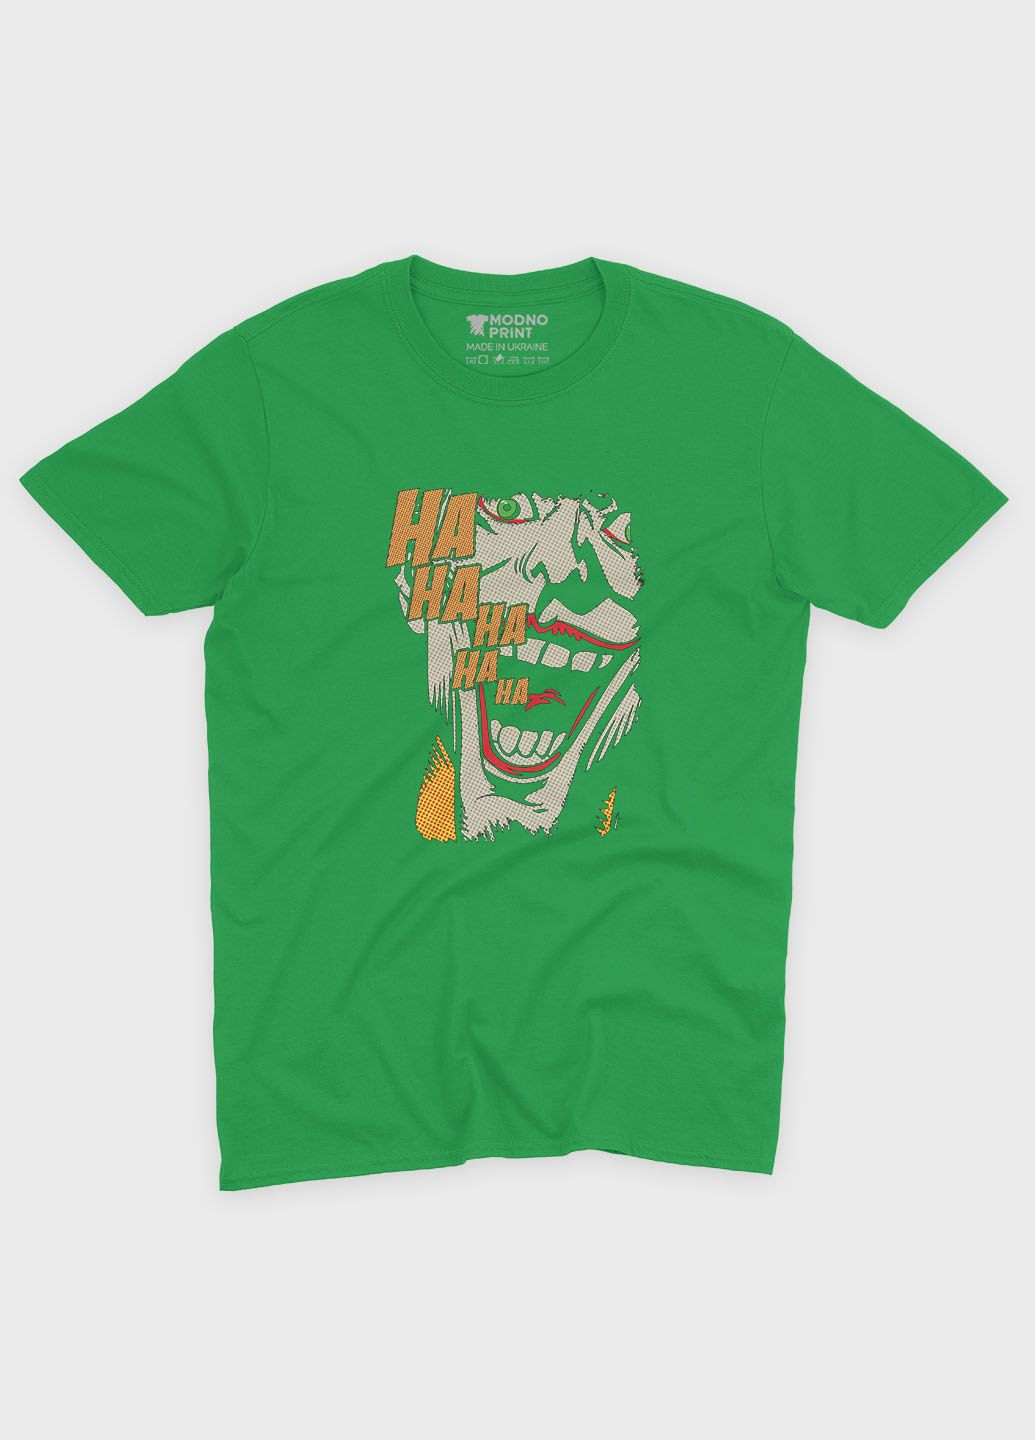 Зеленая демисезонная футболка для мальчика с принтом супервора - джокер (ts001-1-keg-006-005-007-b) Modno